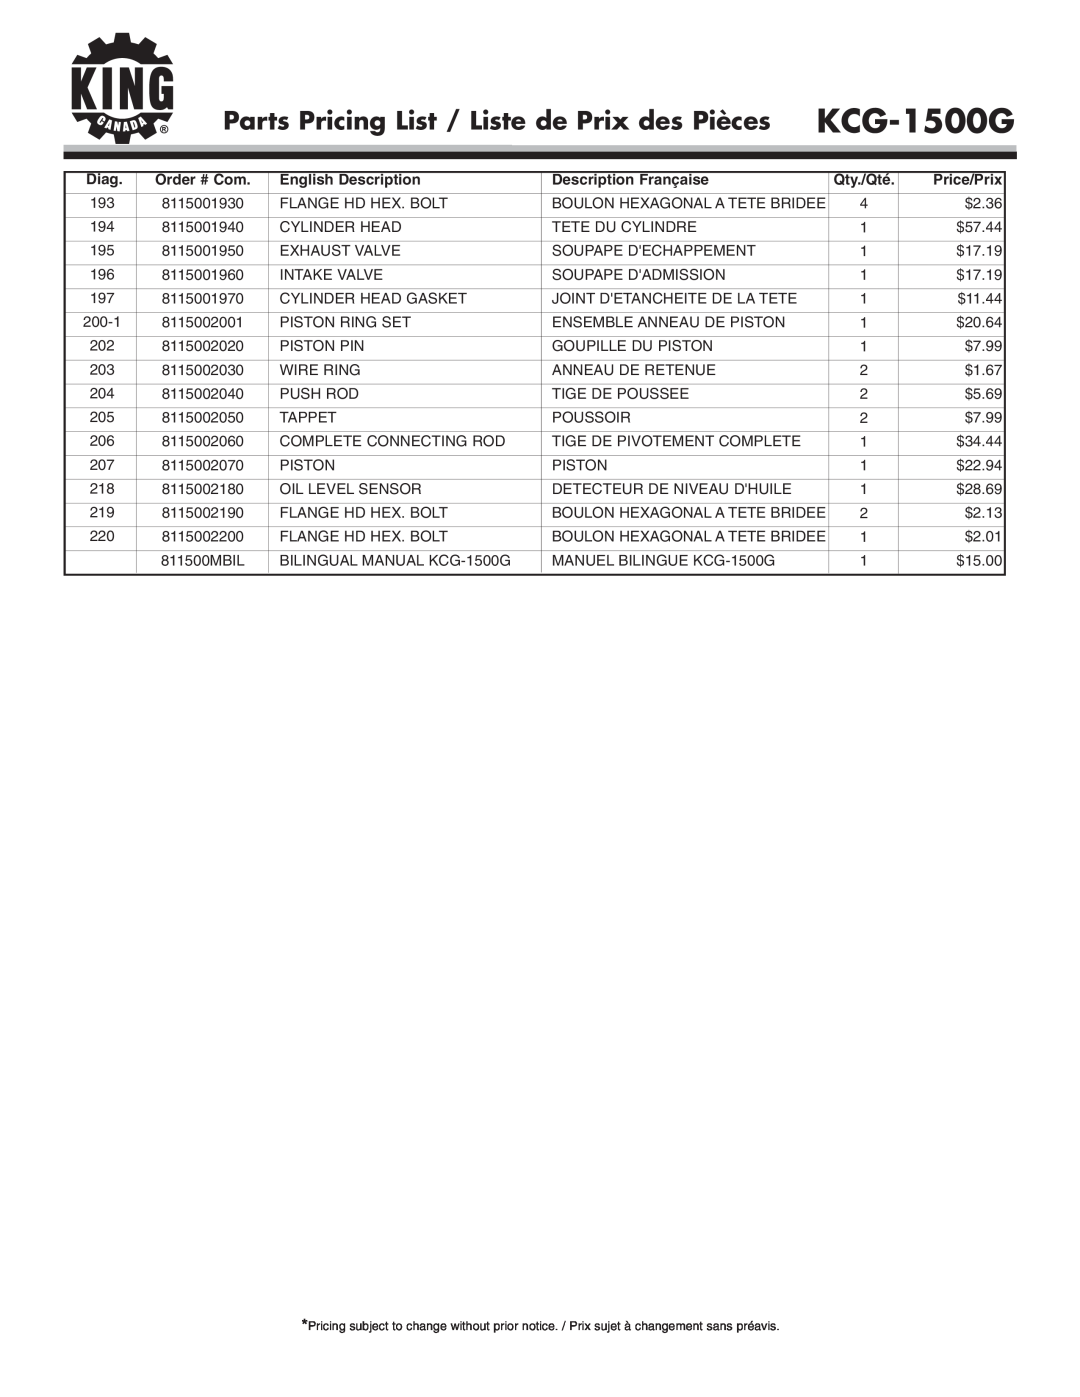 King Canada KCG-1500G Parts Pricing List / Liste de Prix des Pièces, Diag, Order # Com, English Description, Qty./Qté 